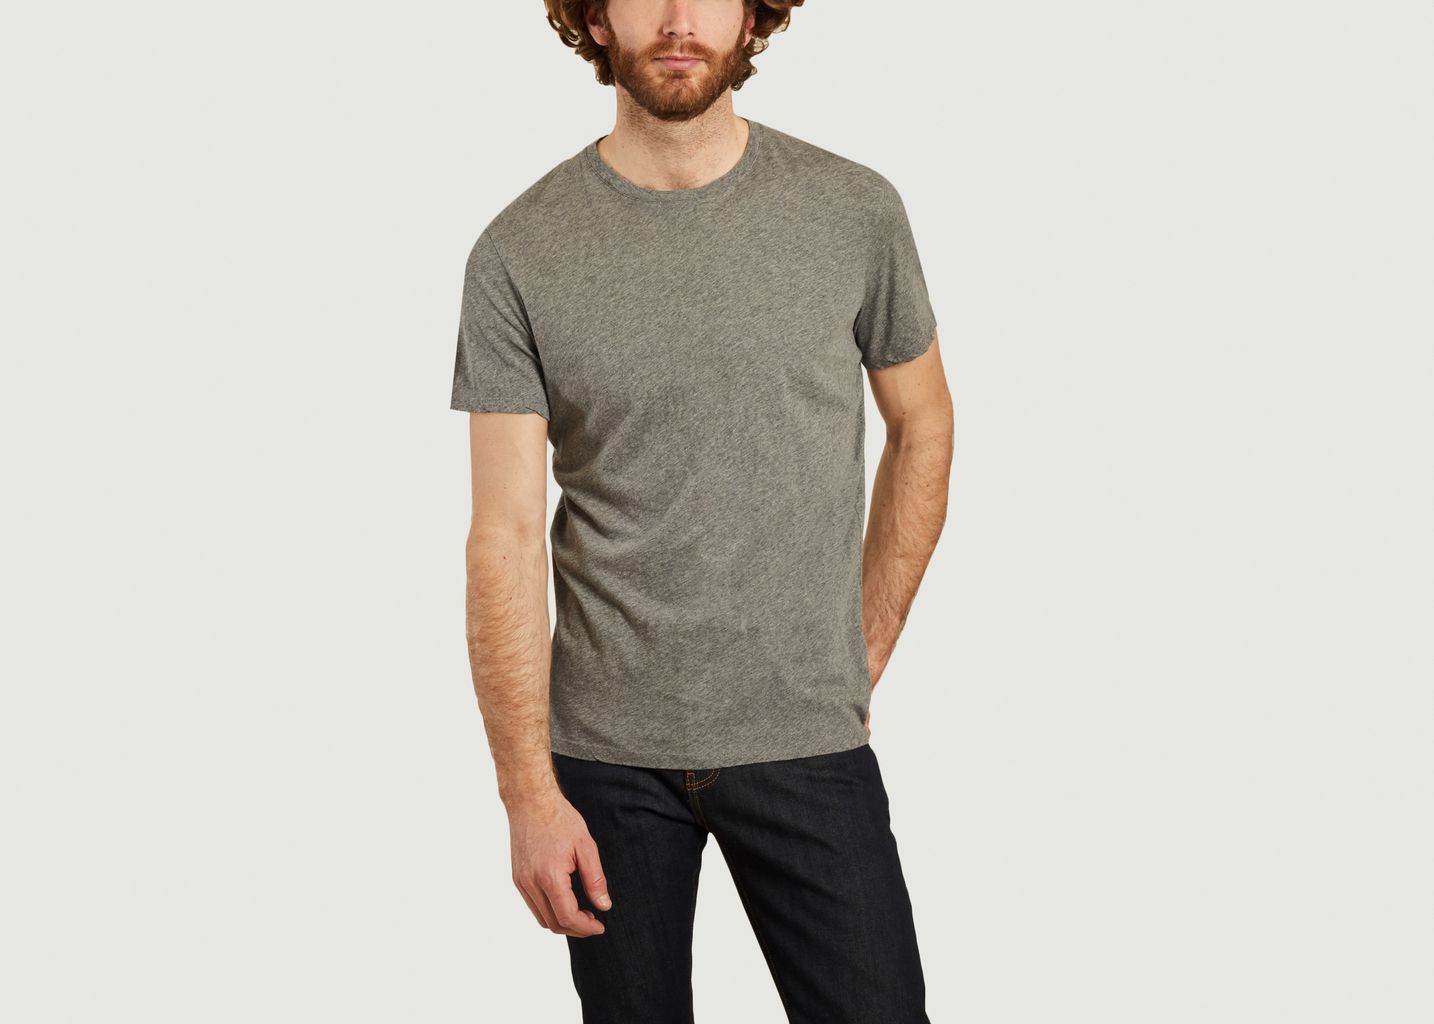 Decatur-T-Shirt - American Vintage